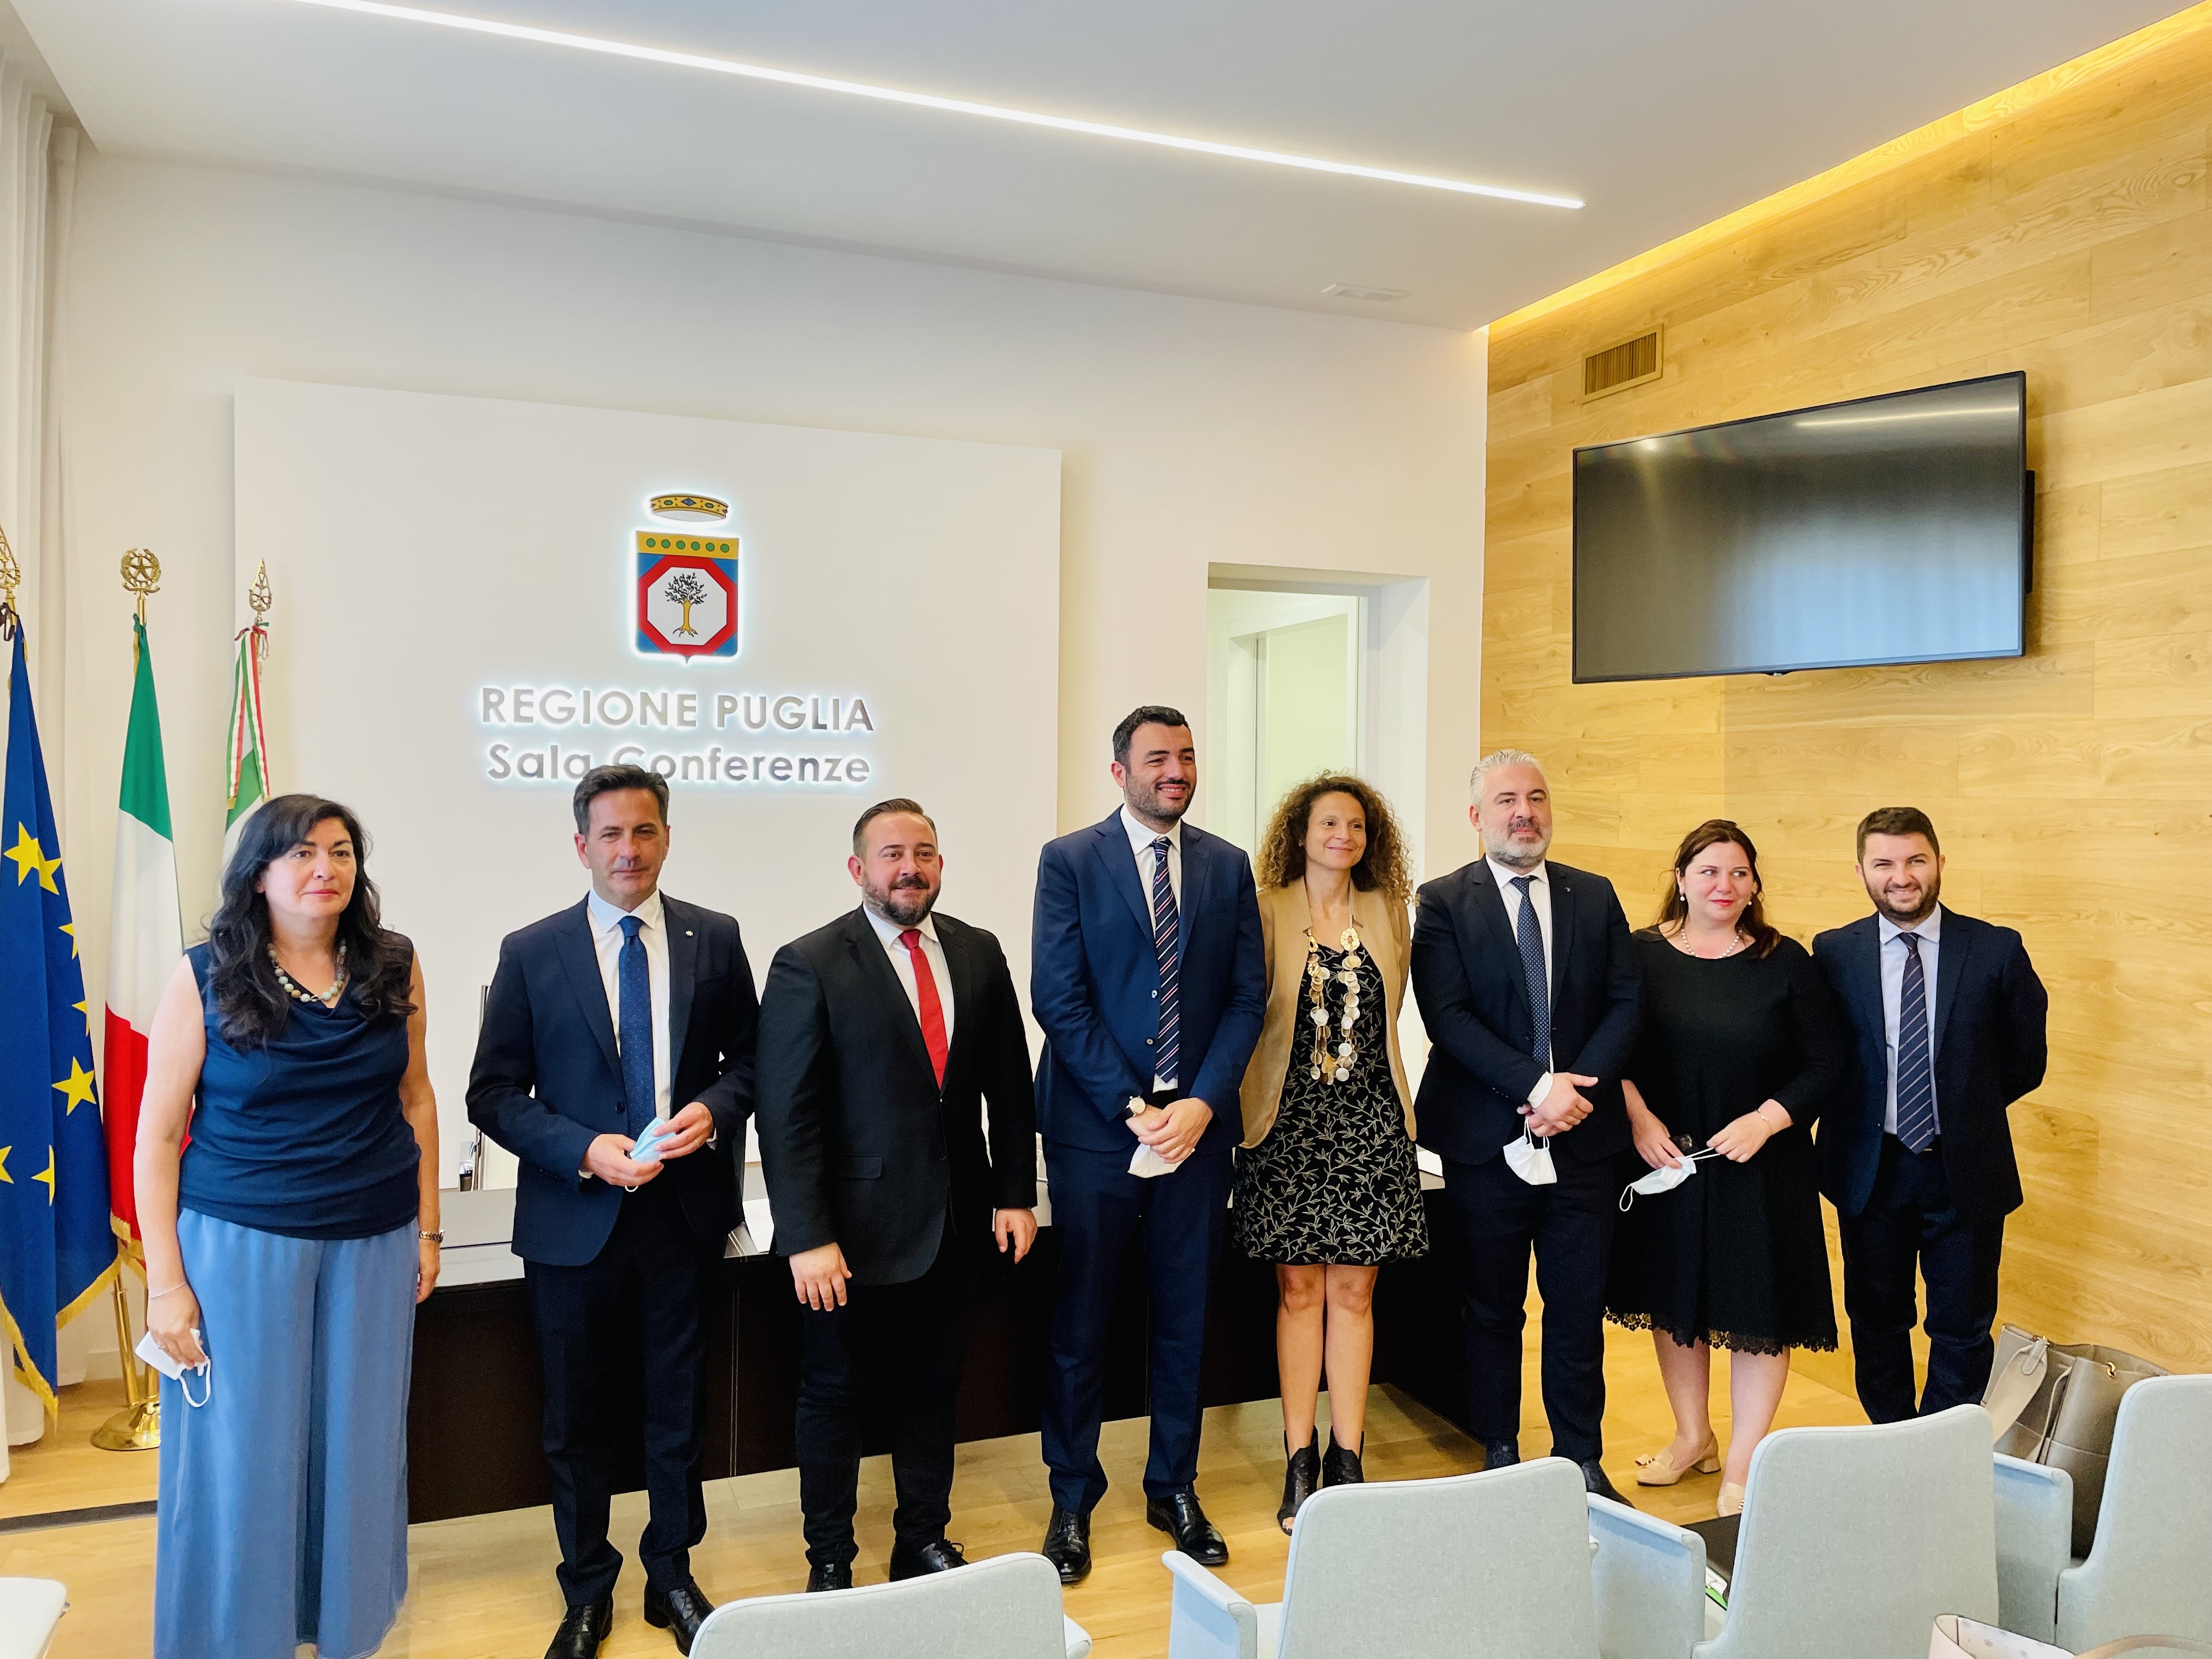 Galleria Incontri bilaterali Puglia - Albania: la cultura dell’innovazione per la crescita dei territori transfrontalieri - Diapositiva 2 di 11